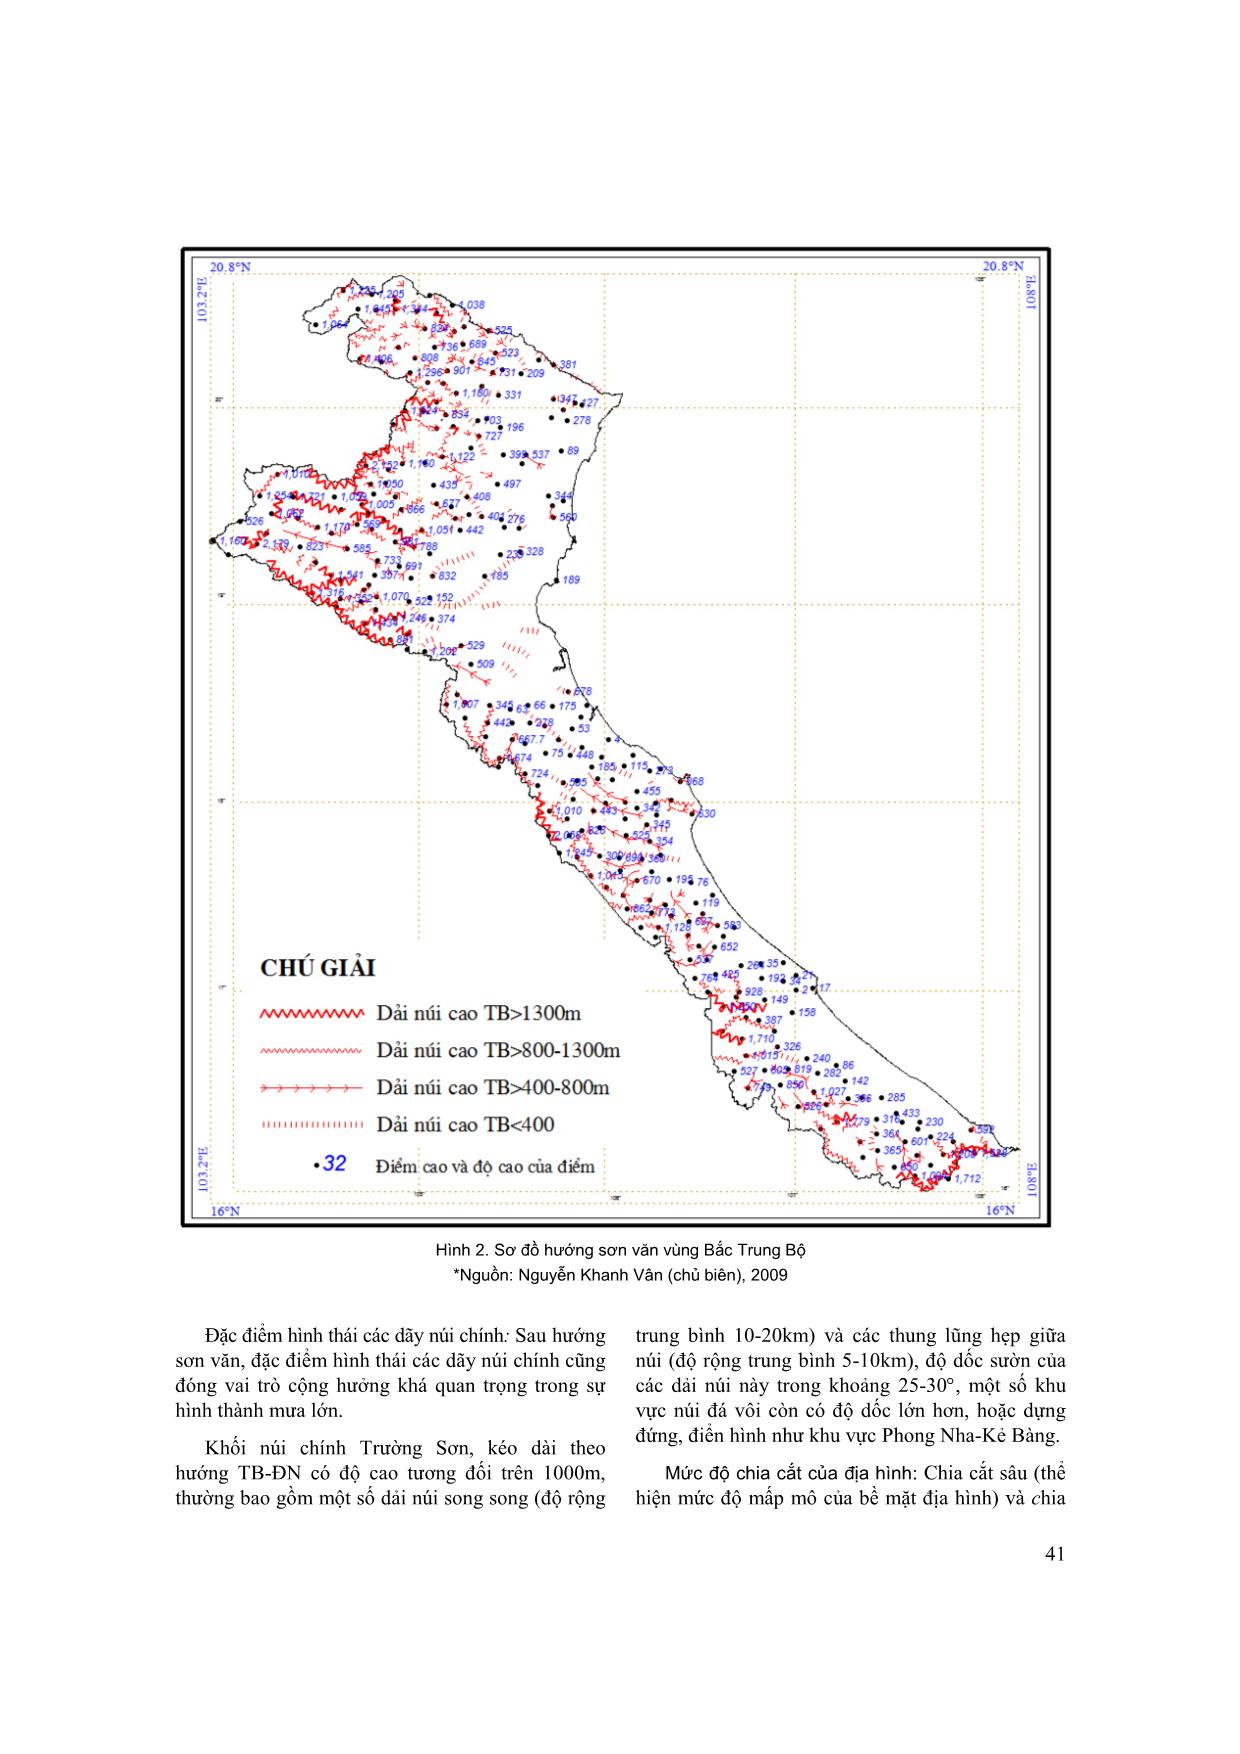 Vai trò của hình thái địa hình đối với mưa lớn ở vùng Bắc Trung Bộ và sự phân hóa giữa Bắc và Nam Đèo Ngang trang 4